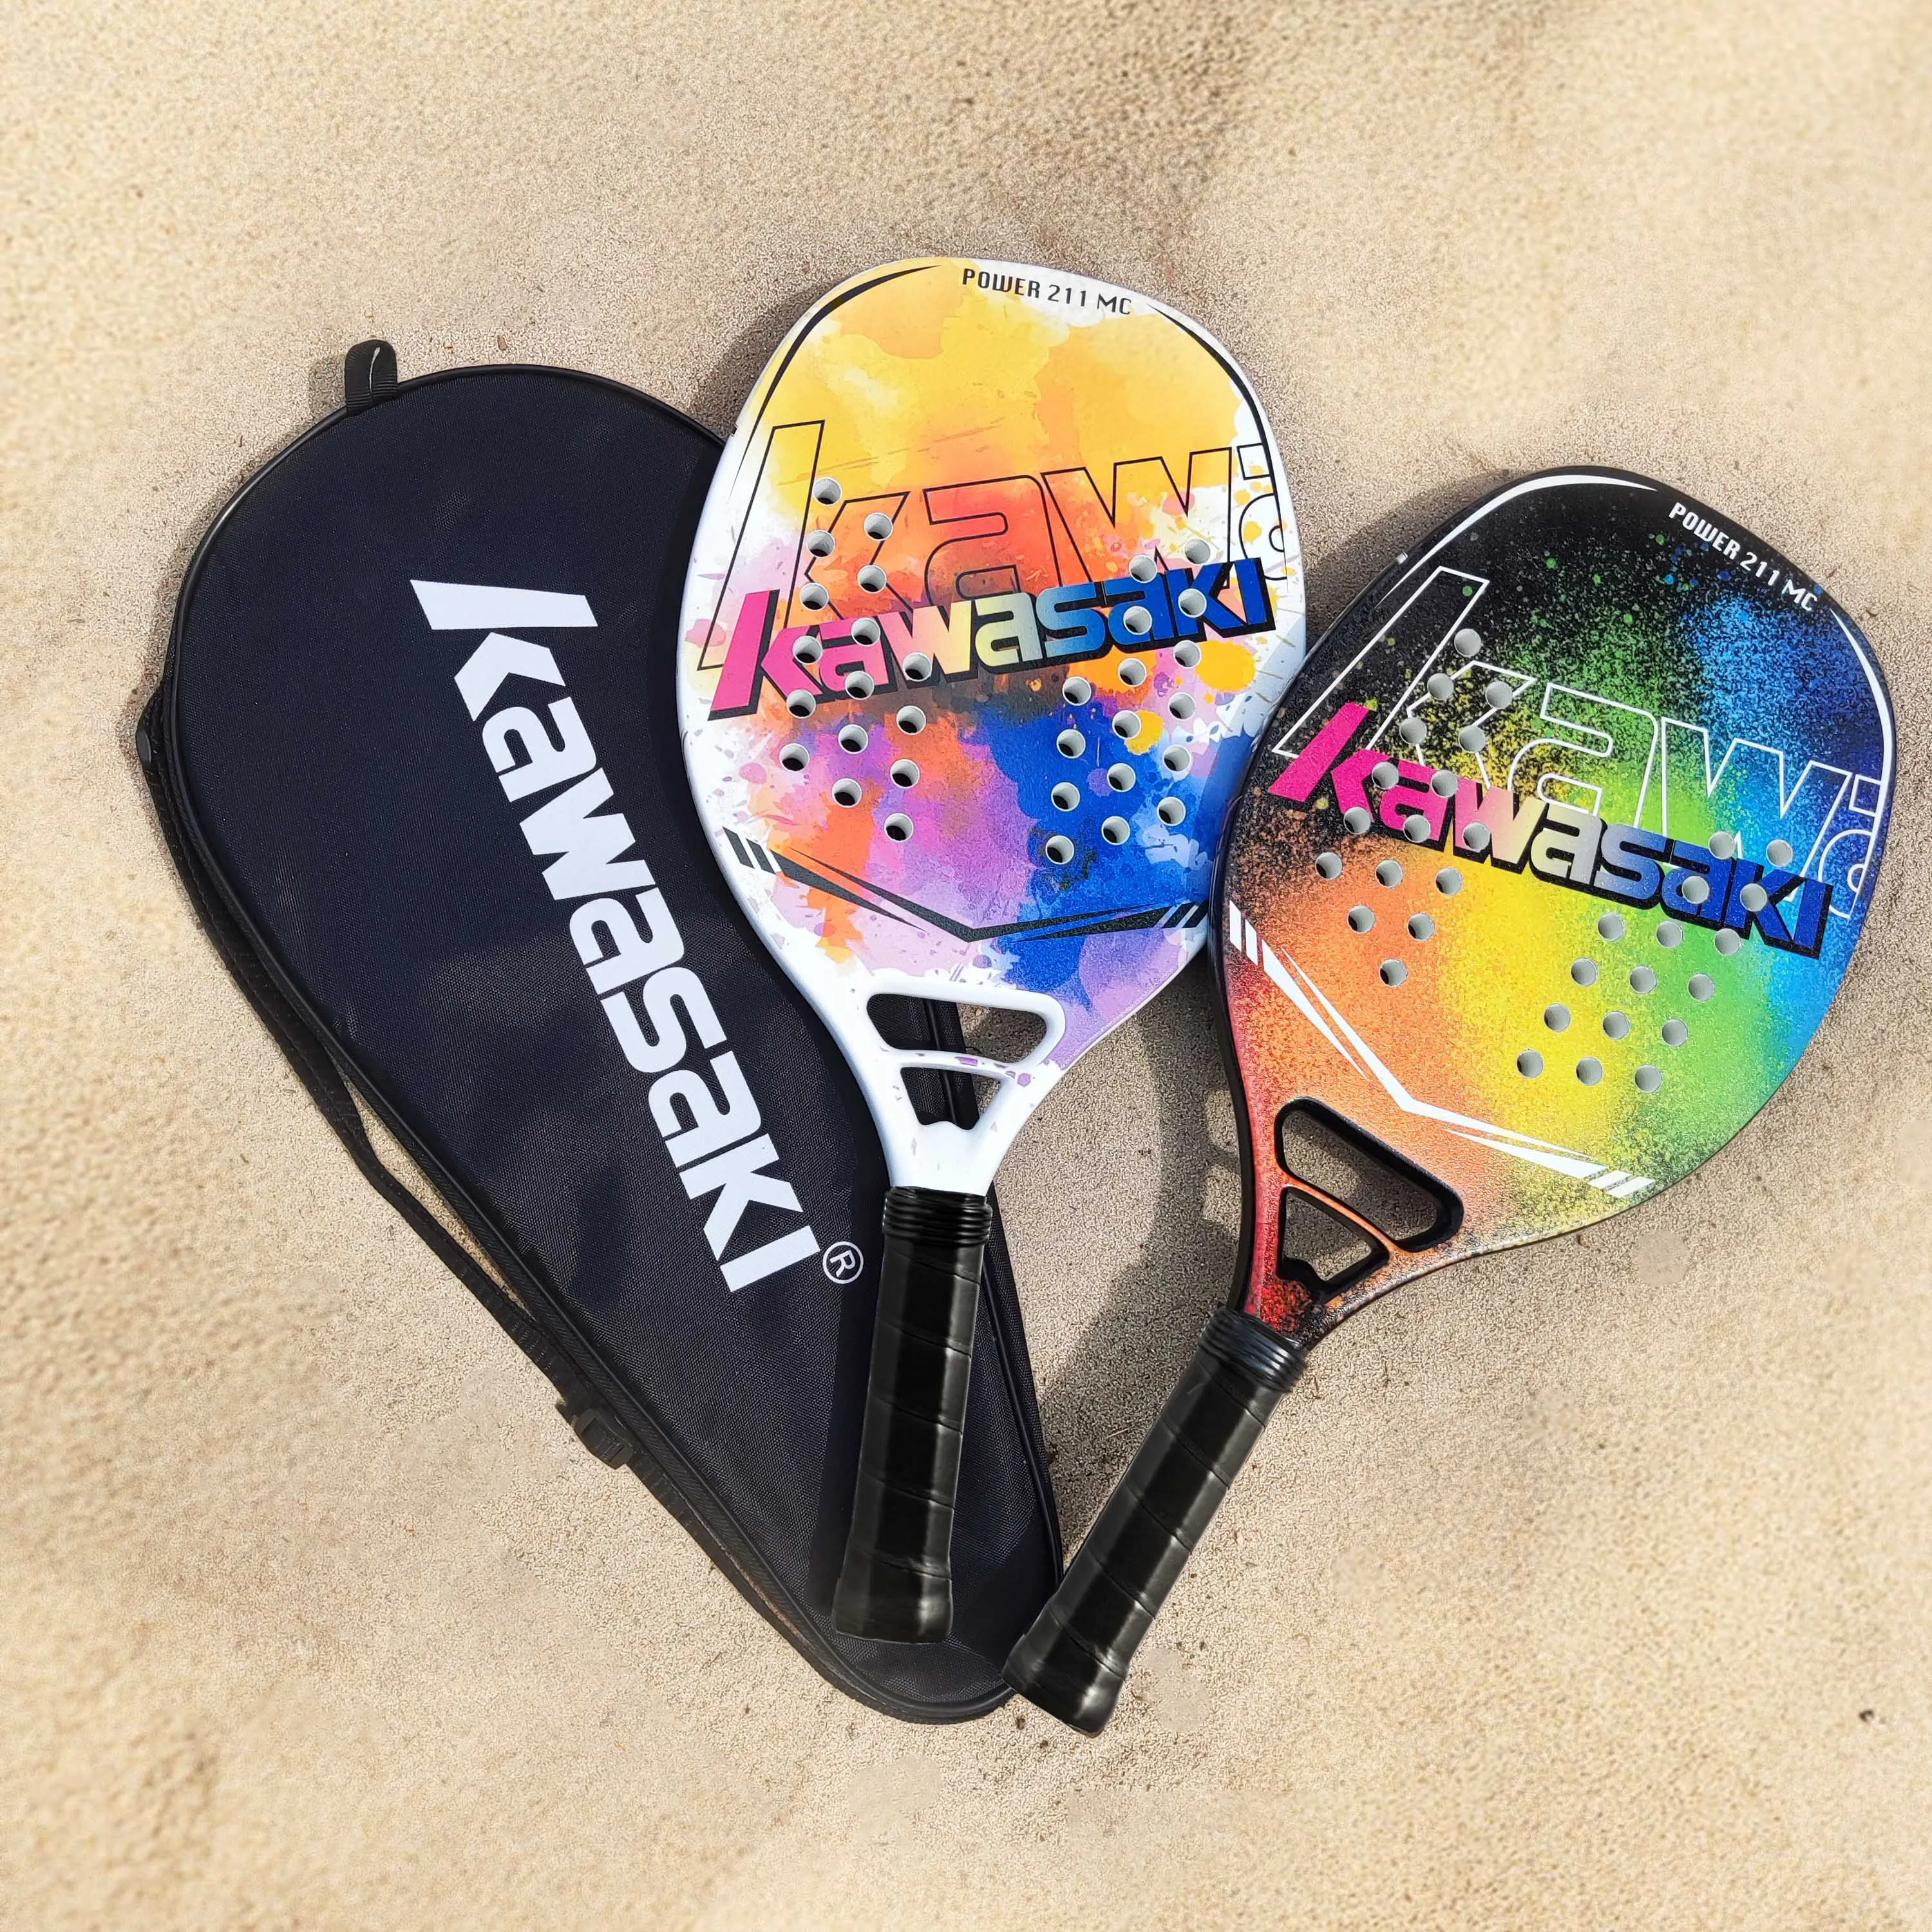 Kawasaki Professional Beach Tennis Paddle Racket Beach Tennis Carbon EVA Face Tennis Raqueta For Adults Rackets With Bag